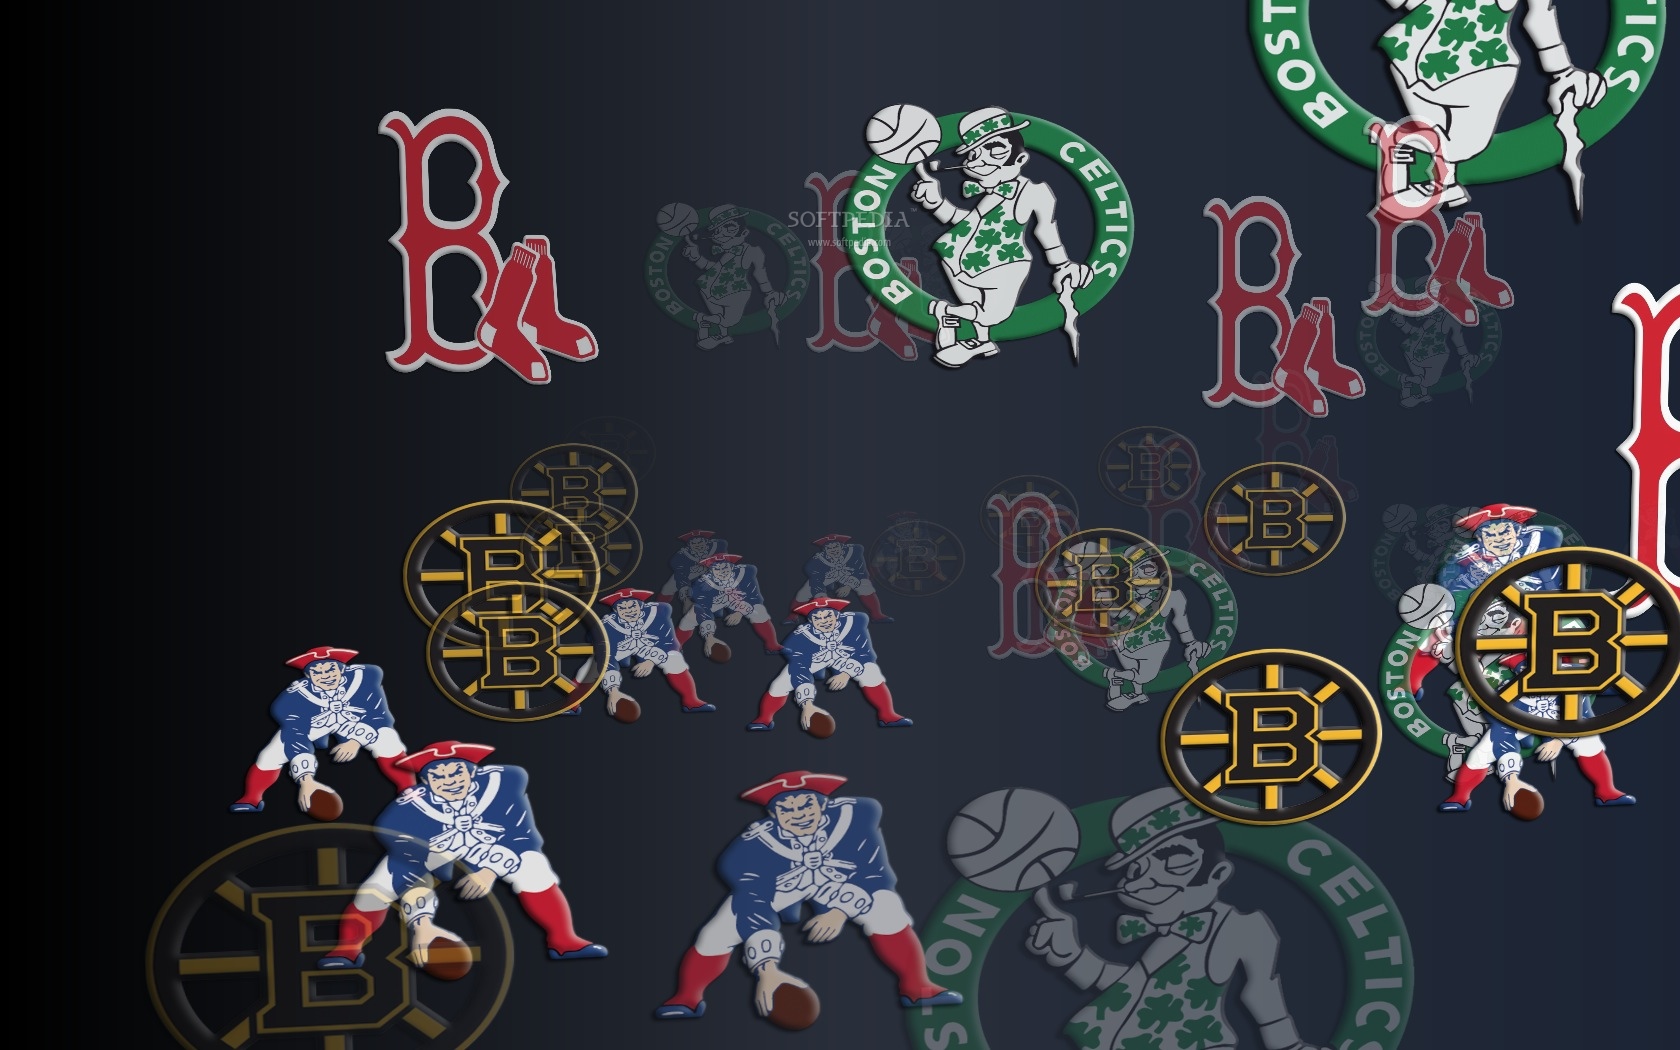 boston sports fond d'écran,police de caractère,conception graphique,personnage fictif,jeux,t shirt